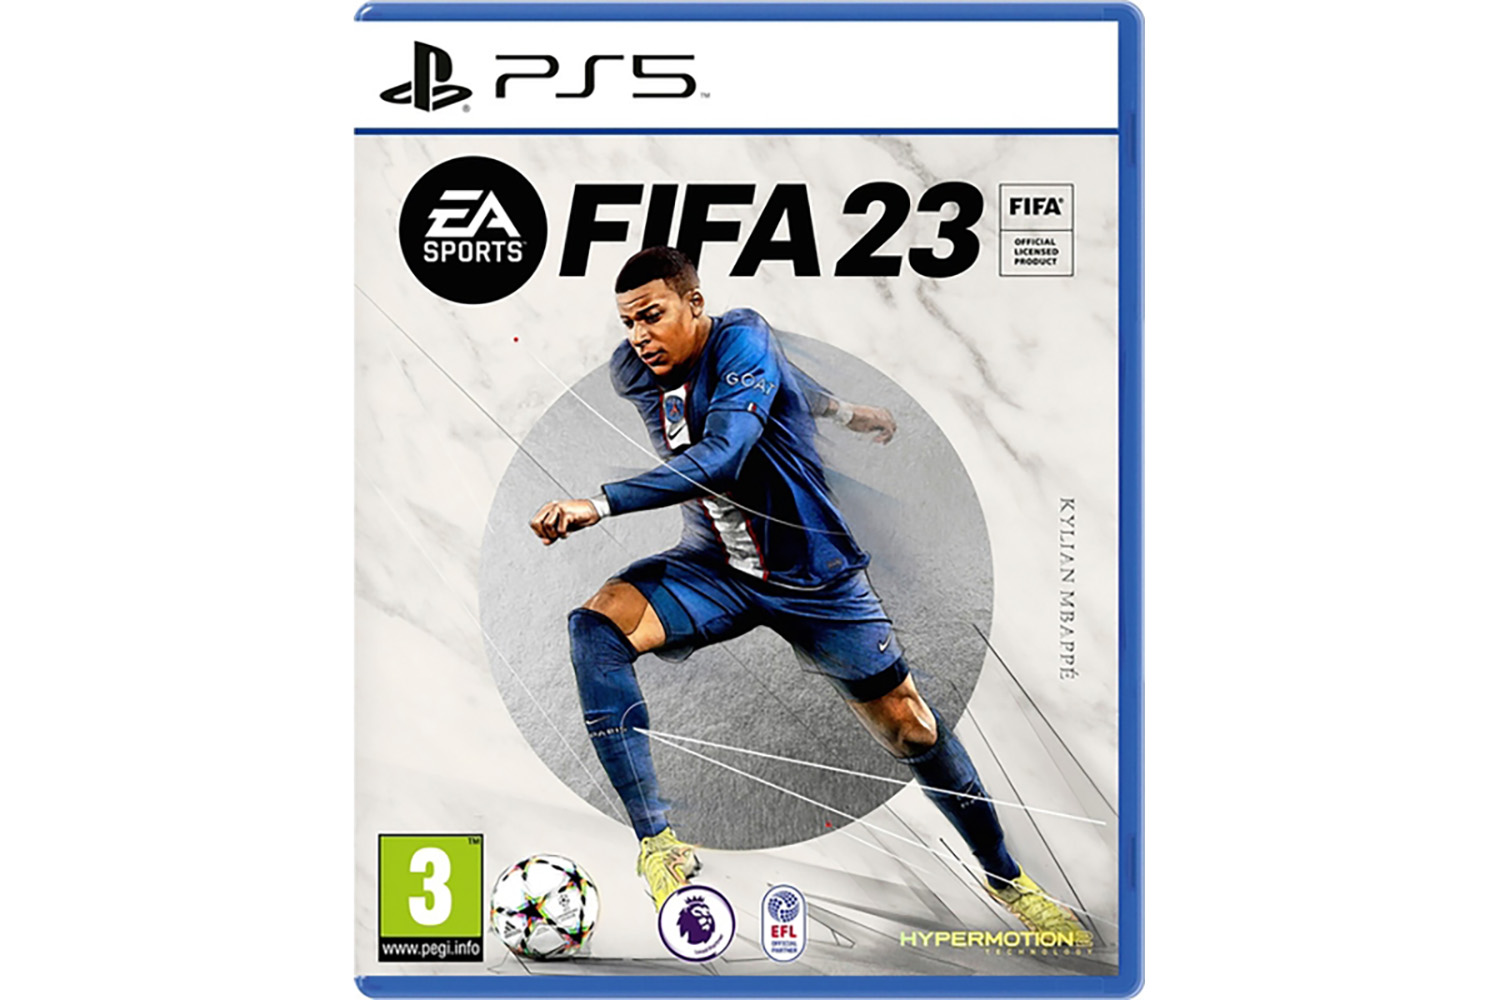 FIFA 23 игра для PlayStation 5 купить в Москве в интернет-магазине по цене  3290 руб. - портагейм.ру